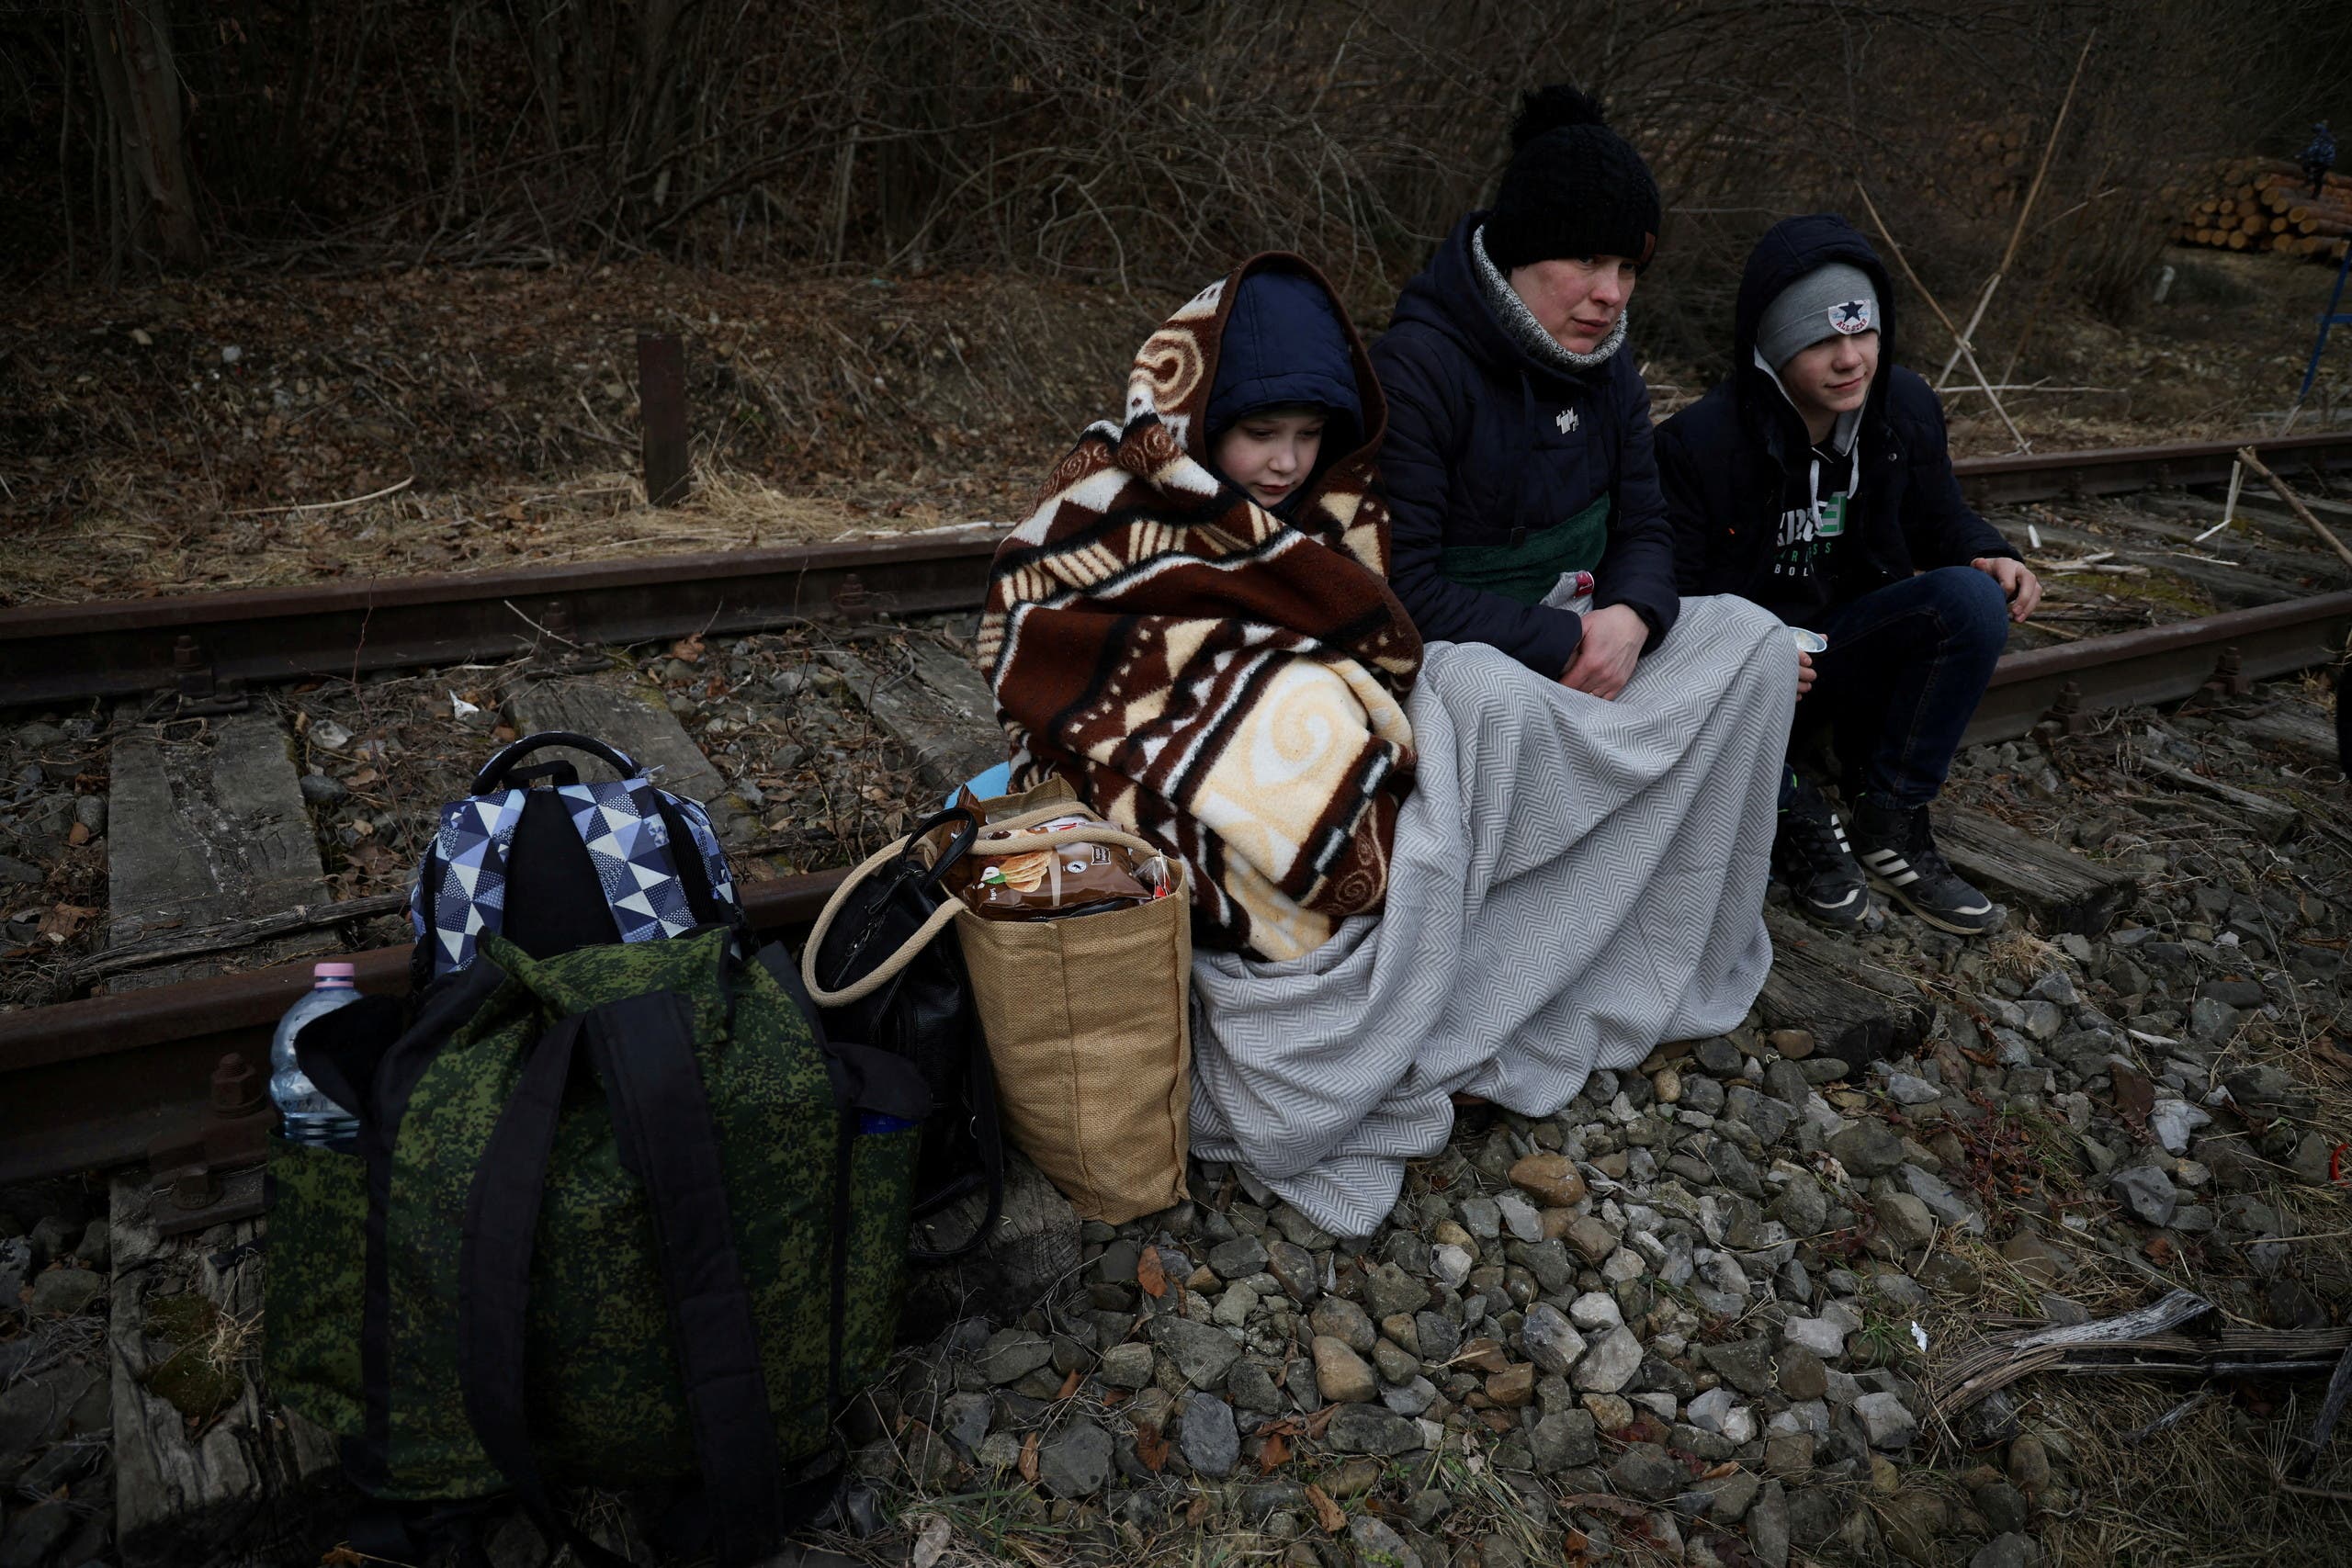 عائلة أوكرانية فرت إلى هولندا بعد العملية الرووسية في أوكرانيا - رويترز